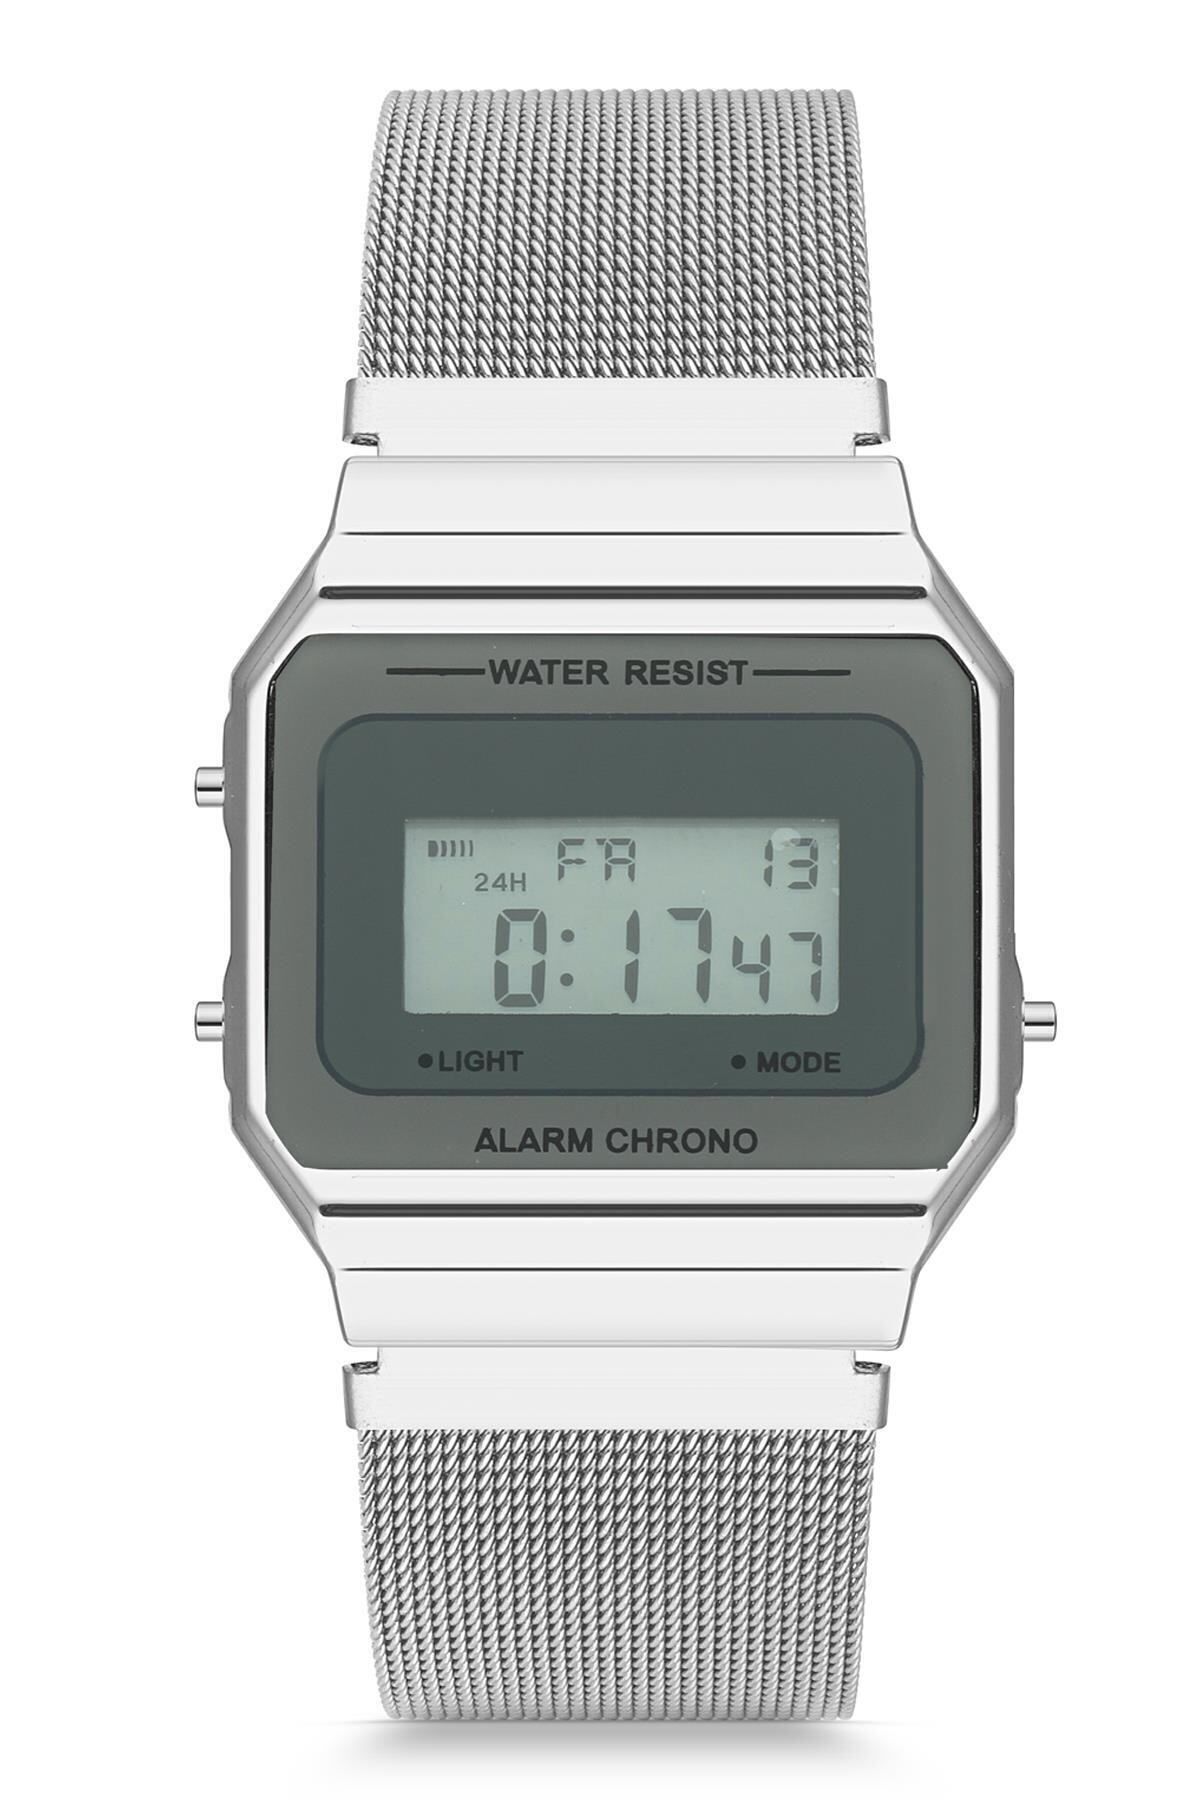 Onouqo Erkek Hasır Kordon Retro Dijital Saat - Gümüş